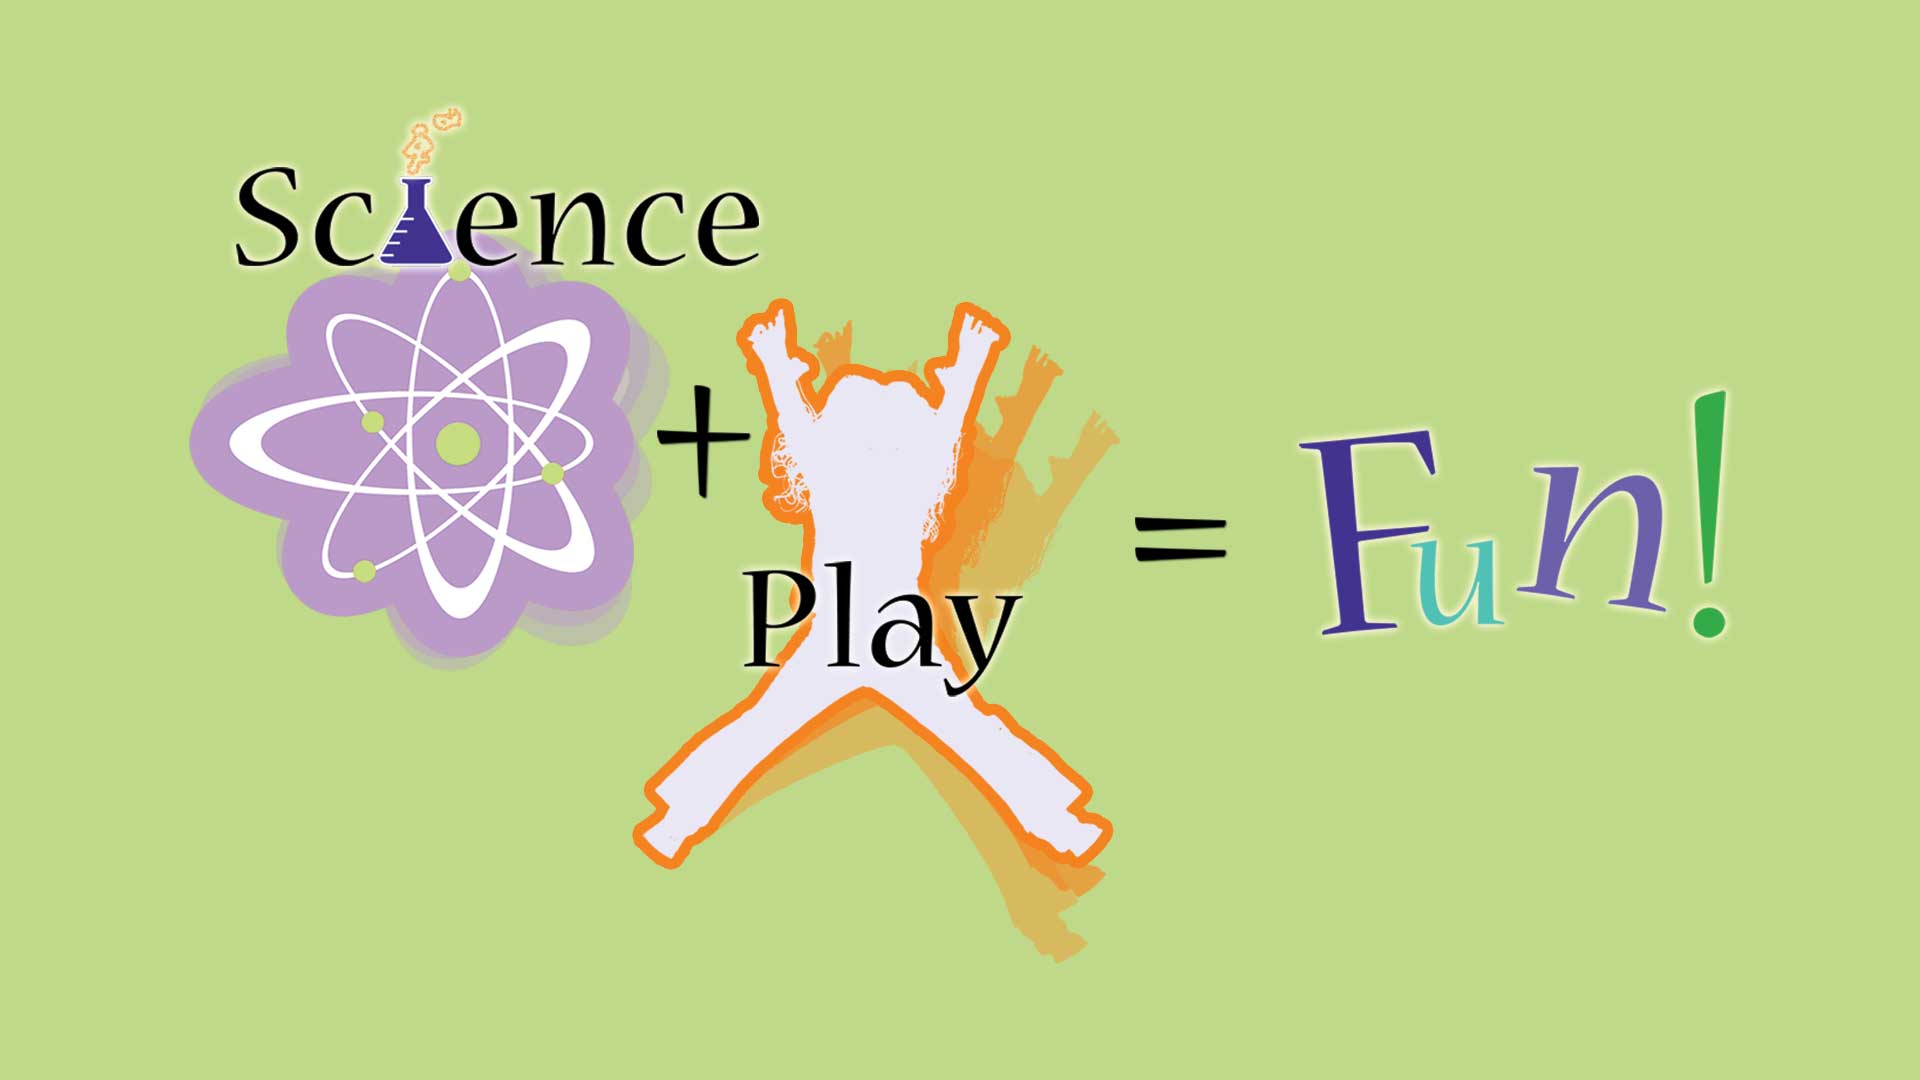 Science + Play = Fun